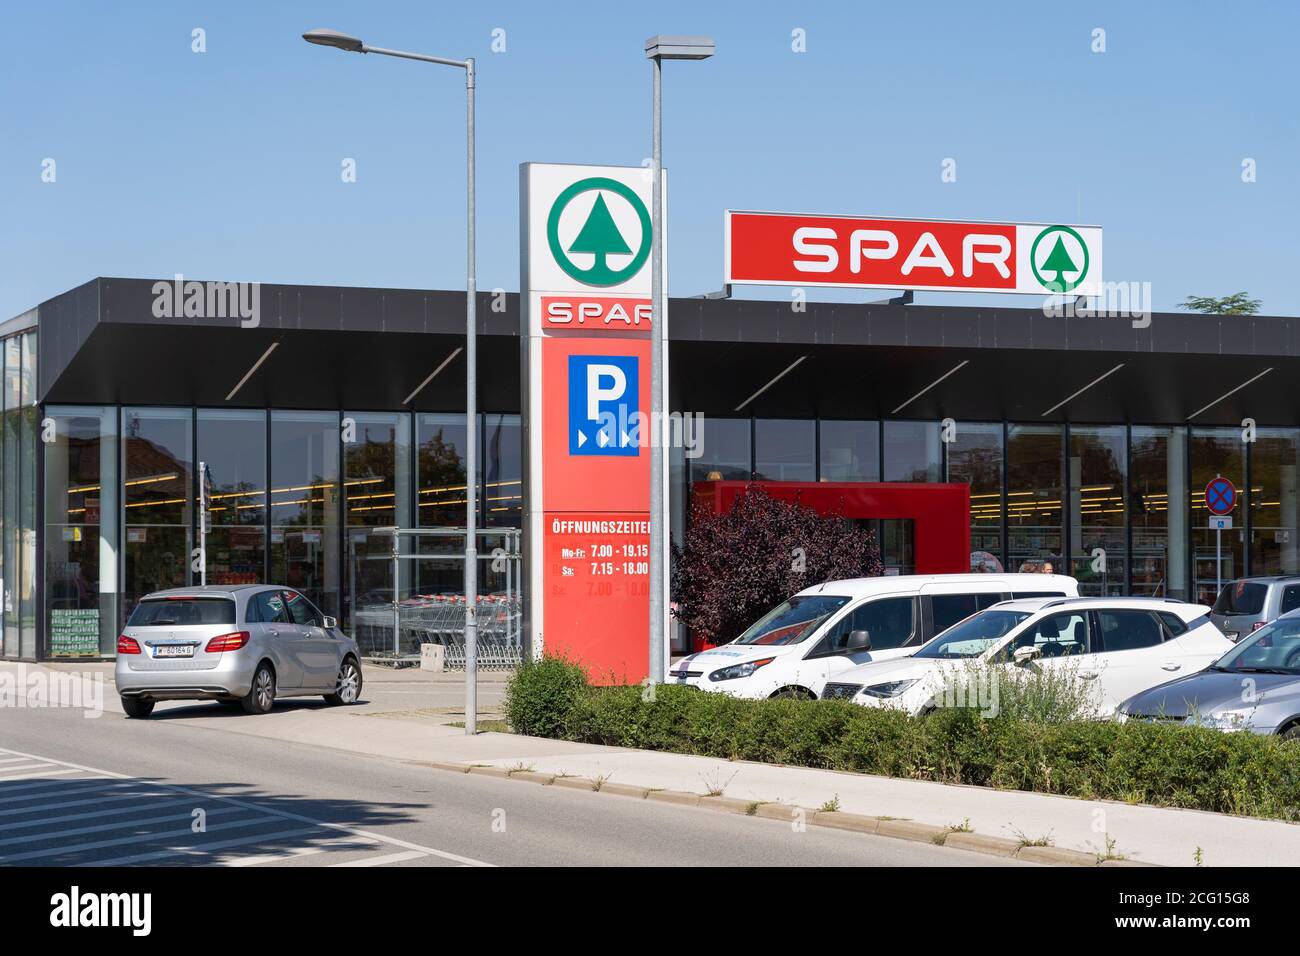 Un supermercato Spar con un grande cartello e logo, Langenlois, Austria. Spar è una multinazionale olandese che gestisce negozi di alimentari Foto Stock